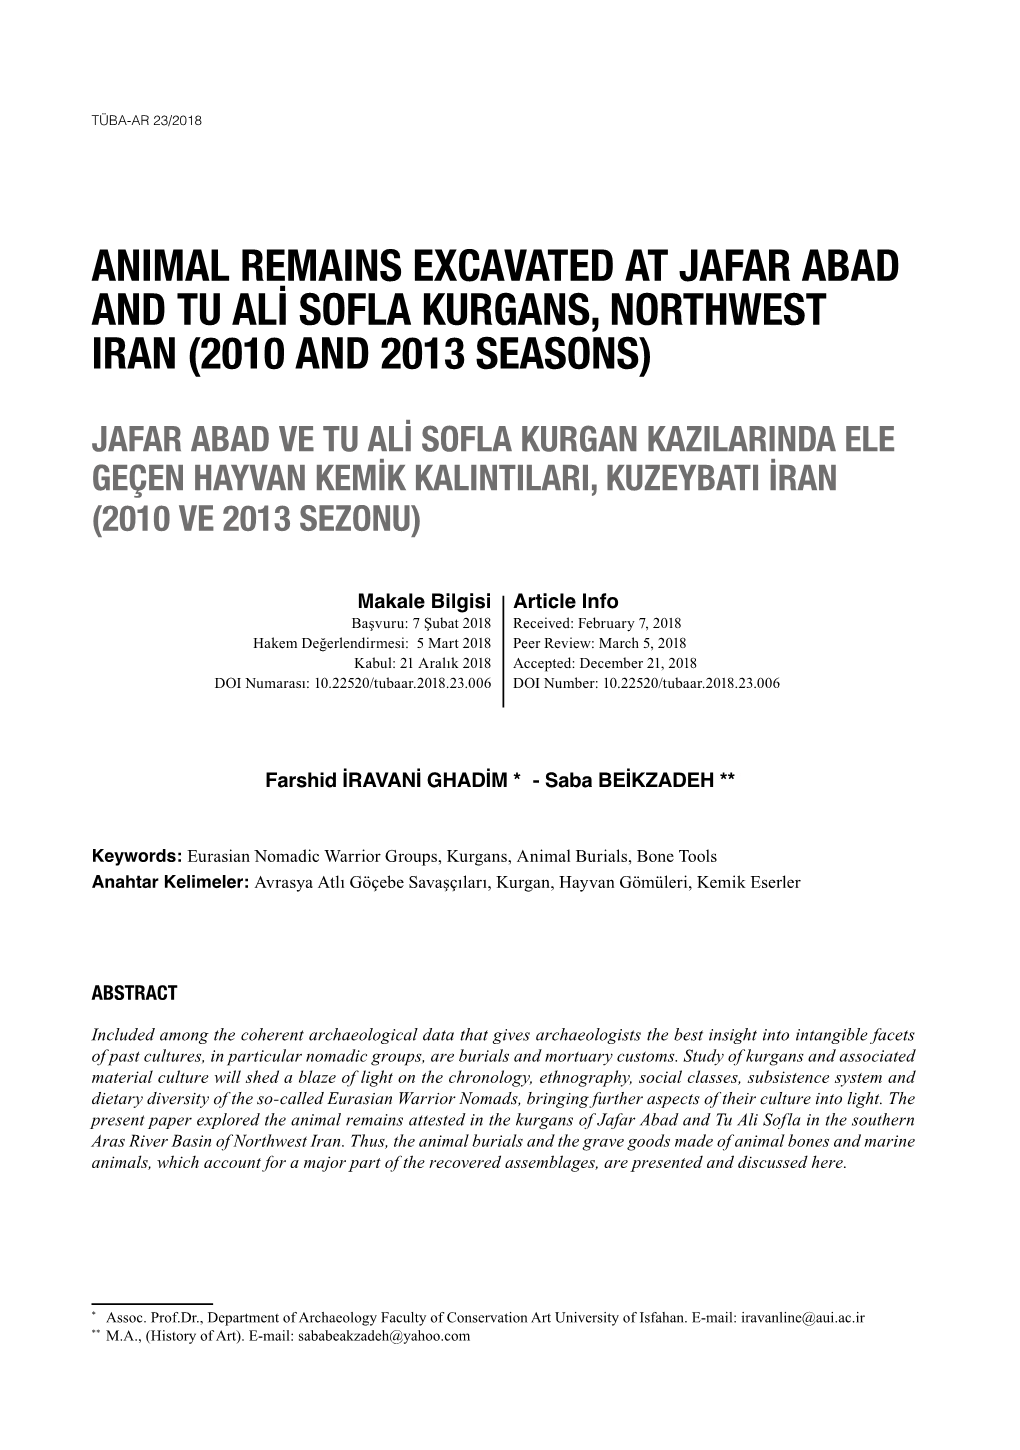 Animal Remains Excavated at Jafar Abad and Tu Ali Sofla Kurgans, Northwest Iran (2010 and 2013 Seasons)